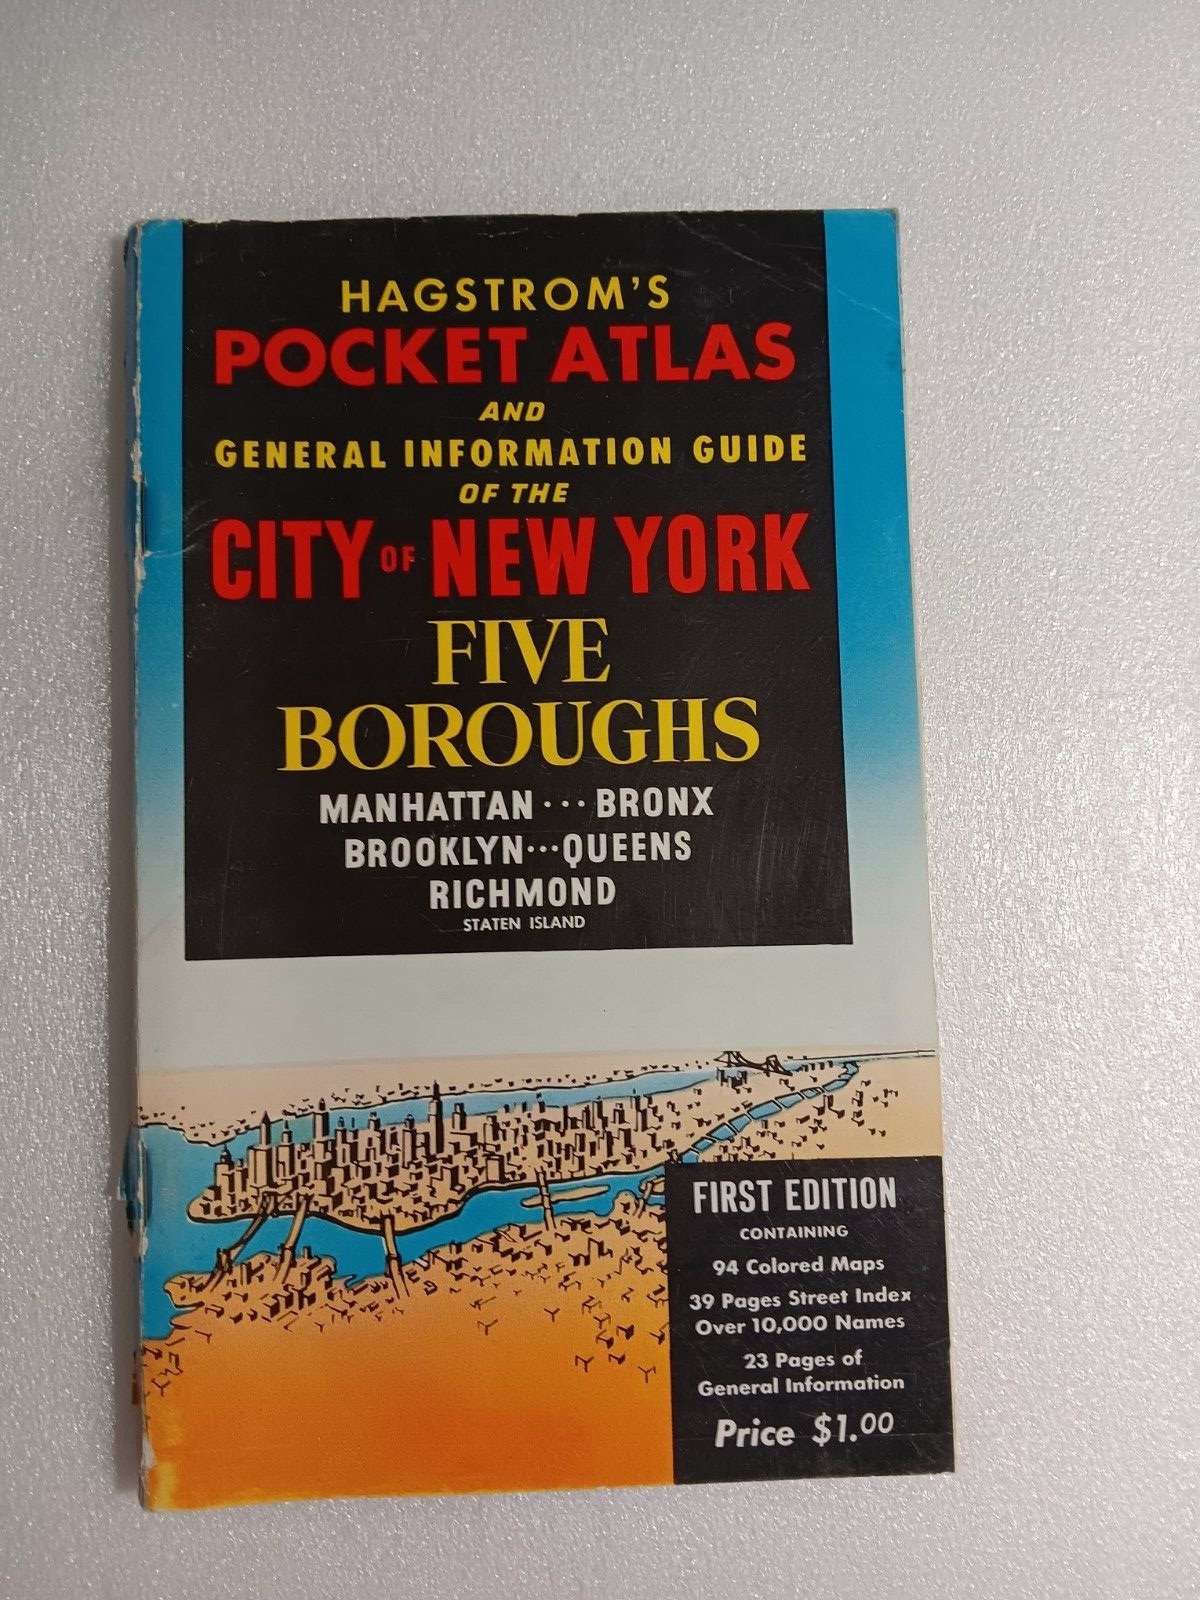 VTG 1957 HAGSTROM'S POCKET ATLAS & GUIDE TO CITY OF NEW YORK 5 BOROUGHS 1ST ED